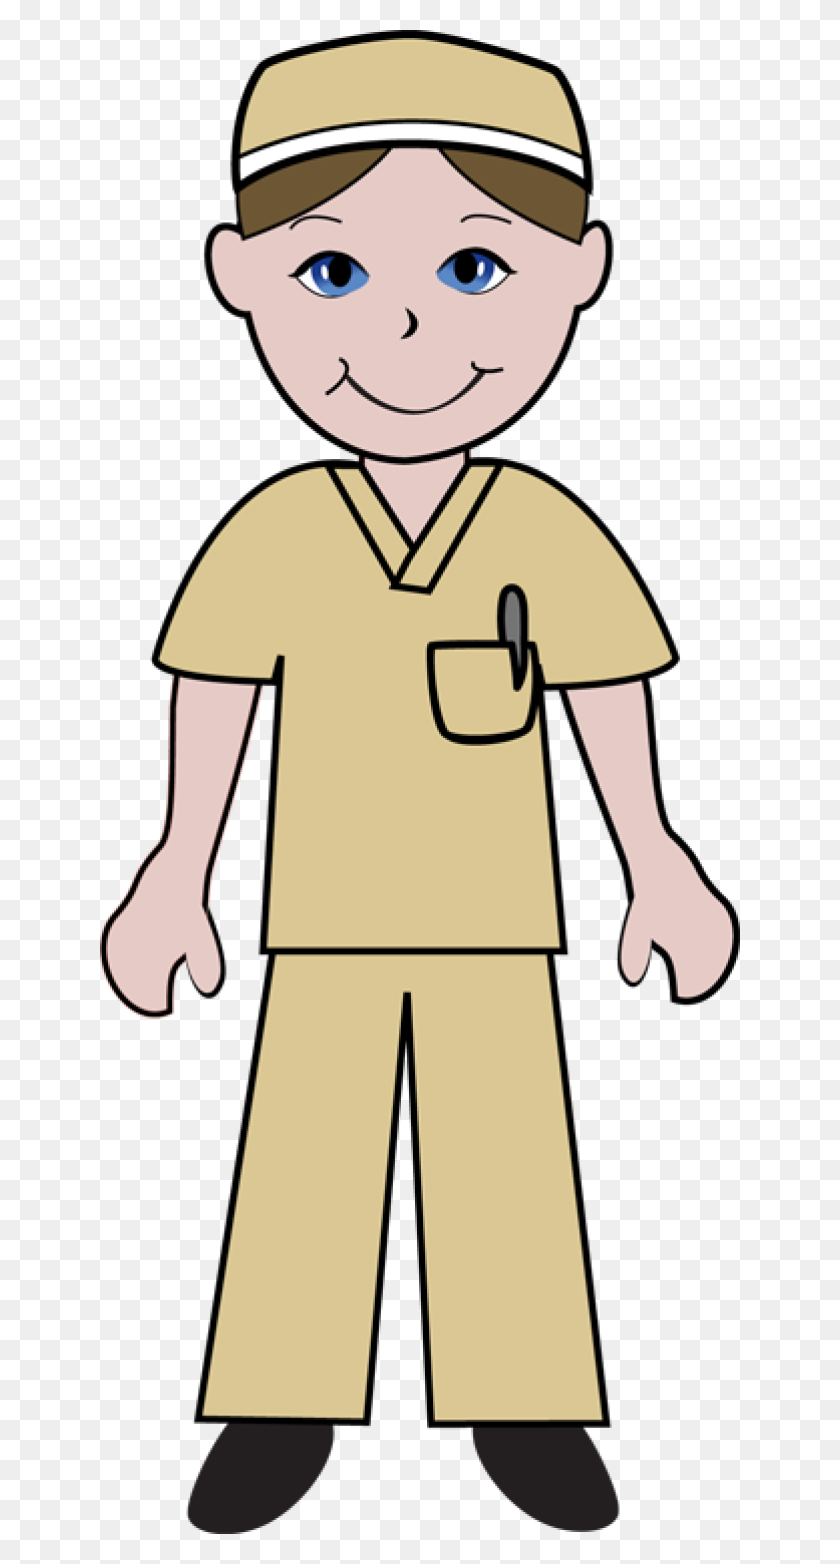 640x1504 Imágenes De Dibujos Animados De Enfermeras Atrevidas Los Doctores Y Los Cliparts Libres De Regalías - Clipart De Enfermeras De La Escuela